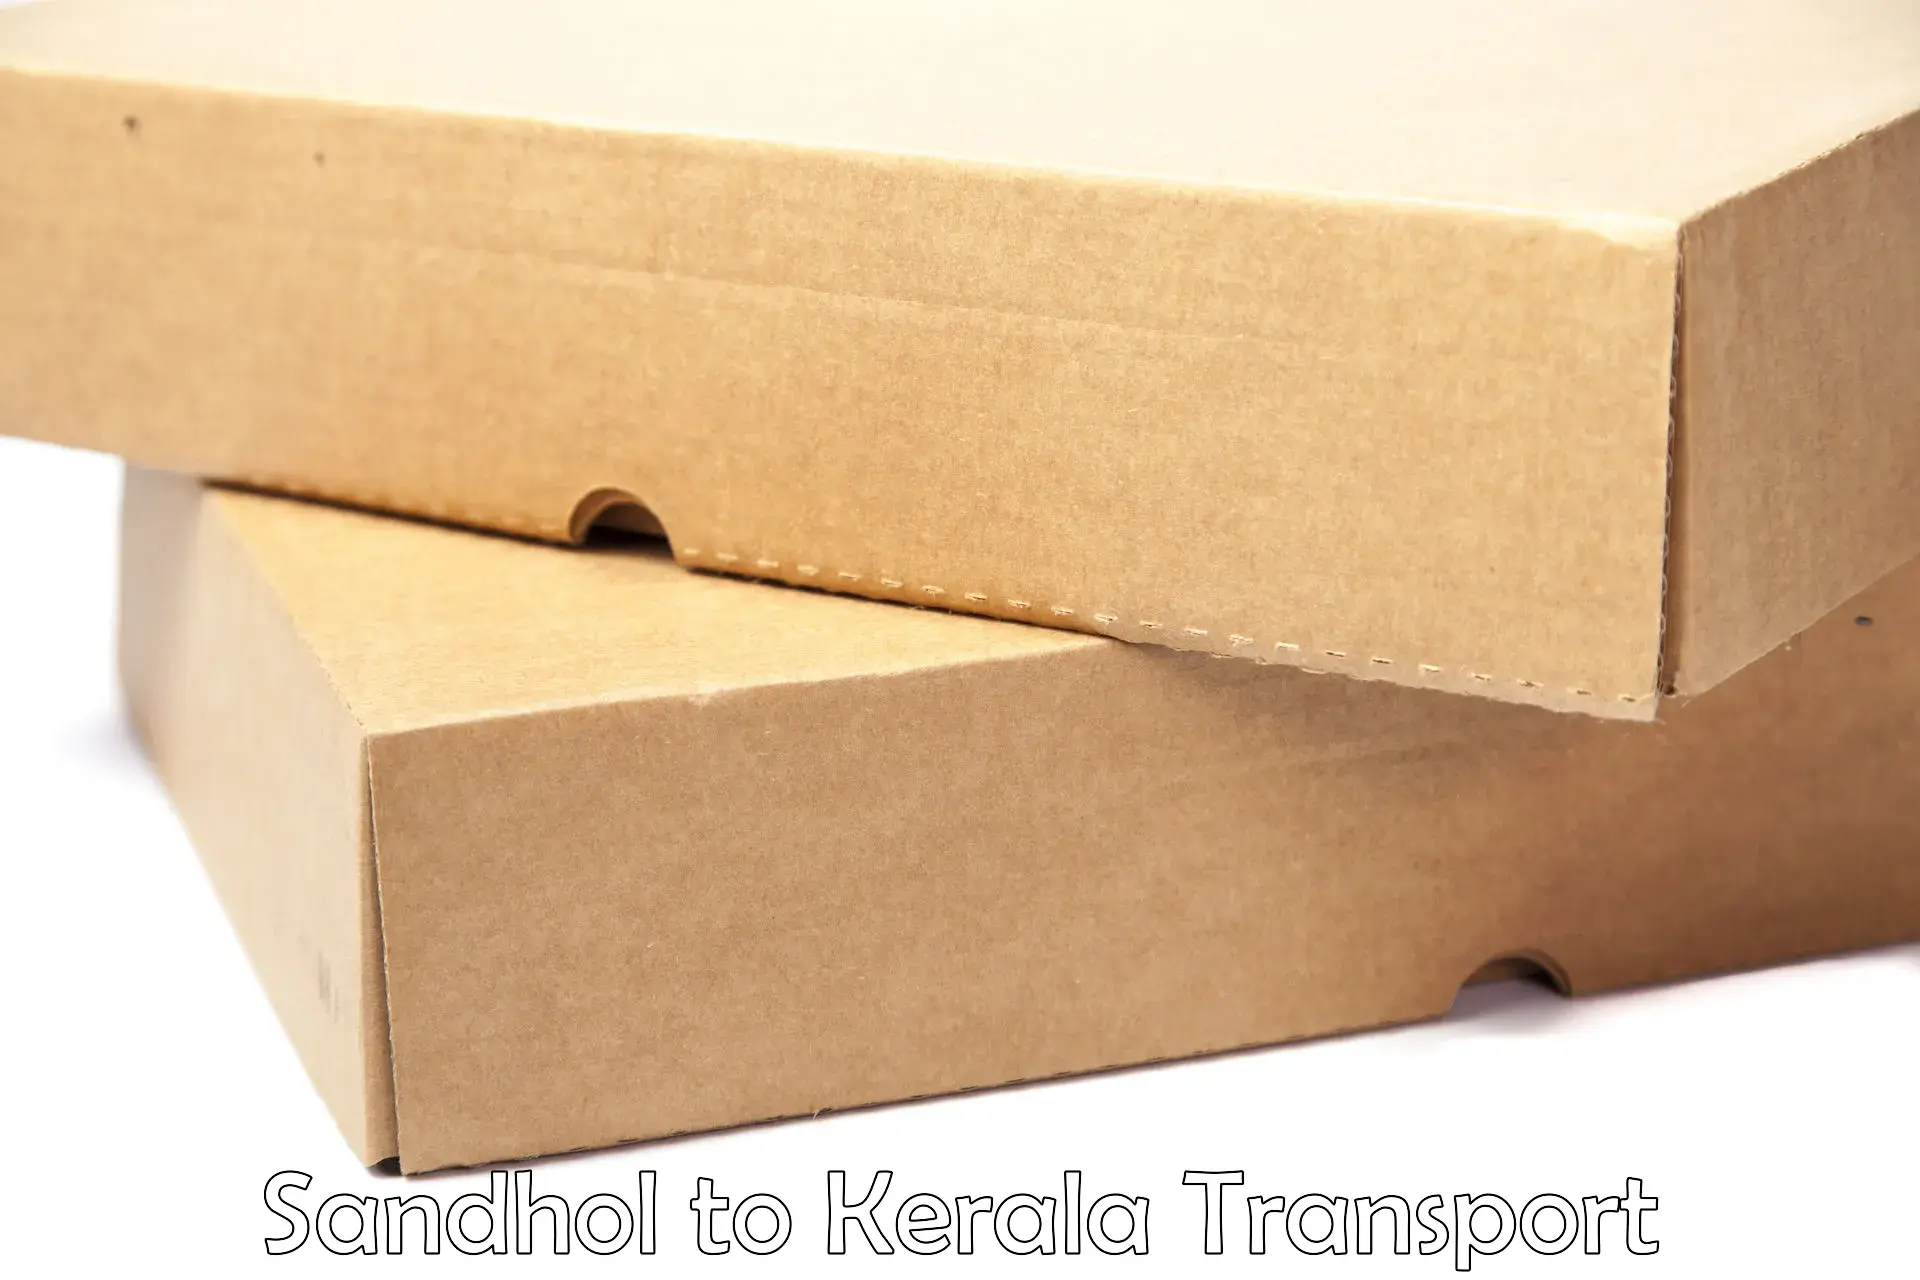 Commercial transport service Sandhol to Kothanalloor